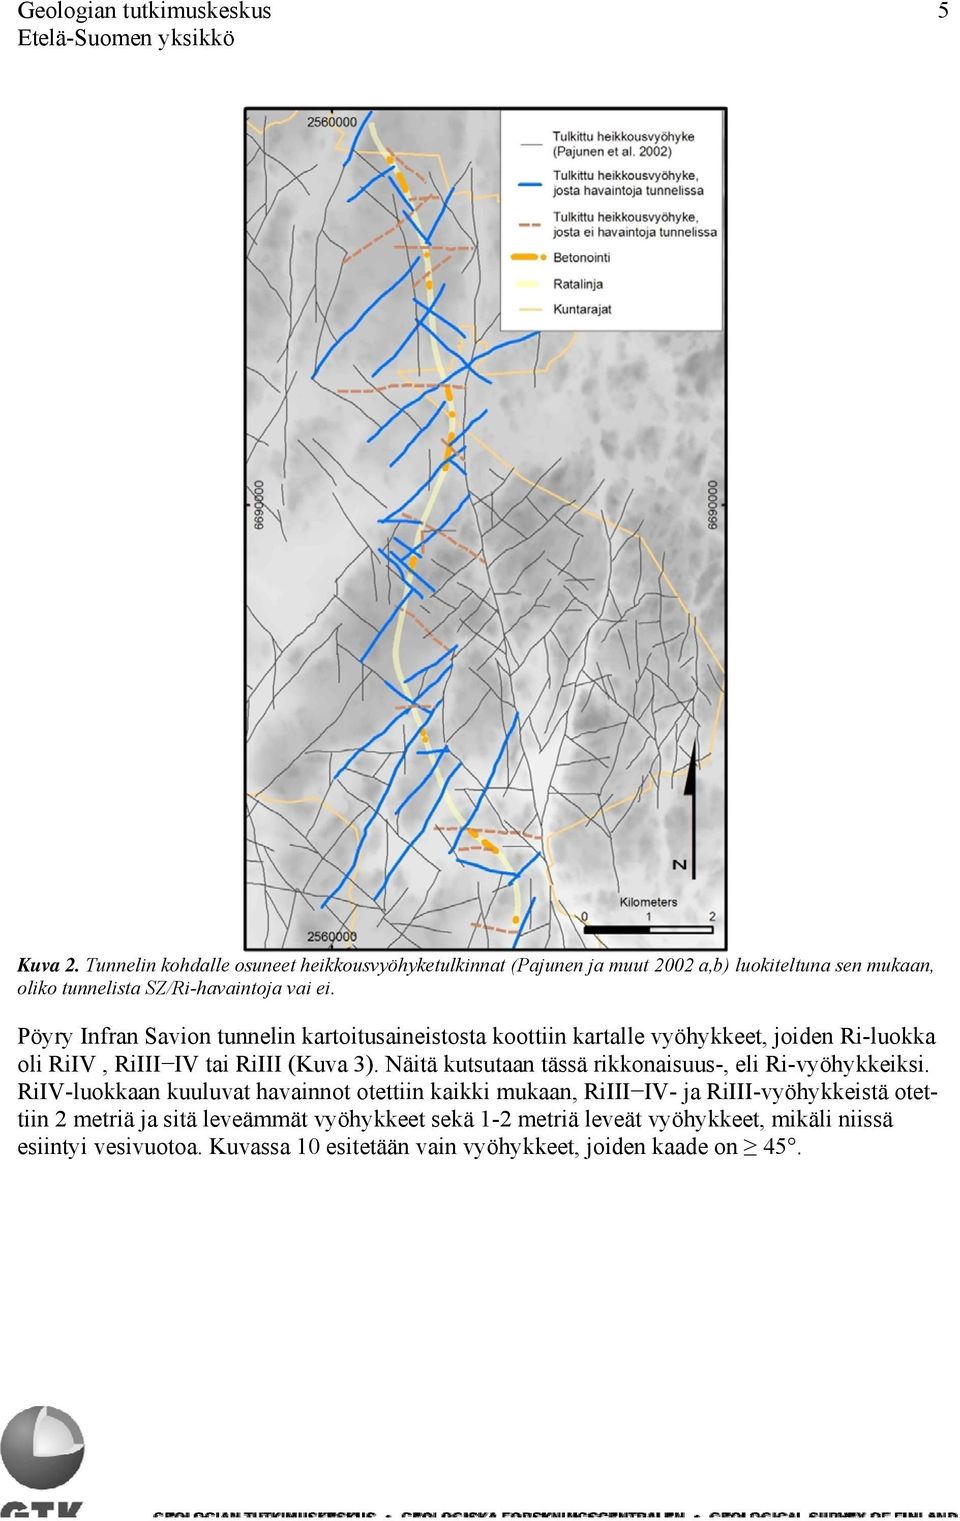 Pöyry Infran Savion tunnelin kartoitusaineistosta koottiin kartalle vyöhykkeet, joiden Ri-luokka oli RiIV, RiIII IV tai RiIII (Kuva 3).